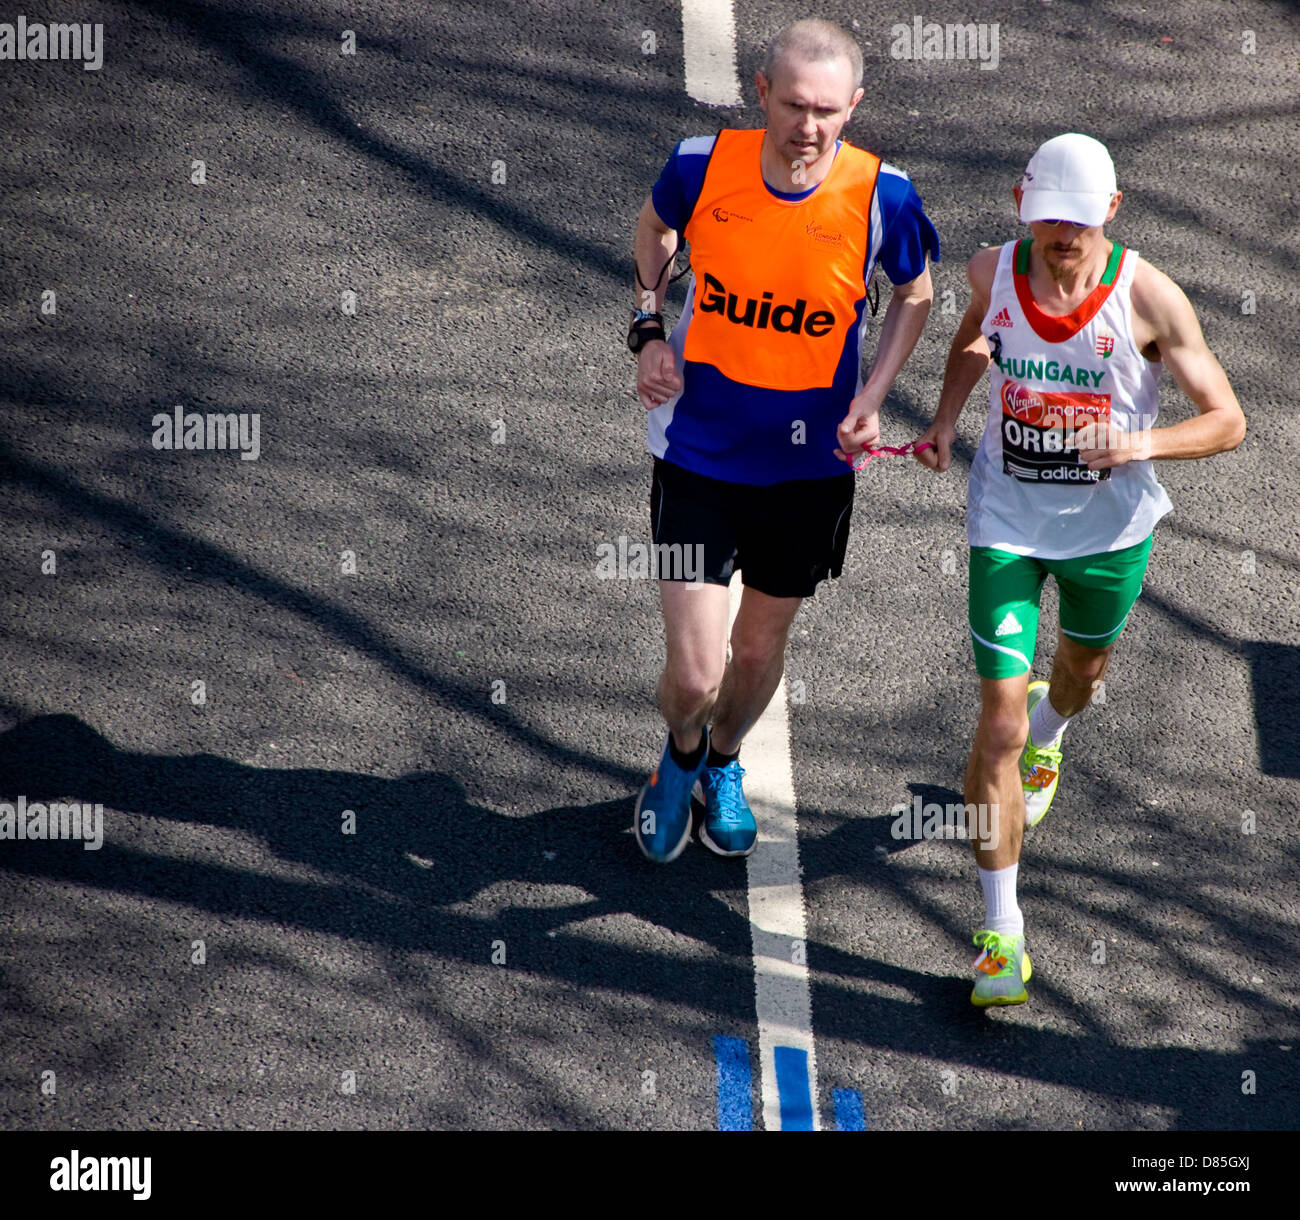 Les déficients visuels et coureur hongrois guide voyant dans le marathon de Londres Angleterre Europe 2013 Banque D'Images